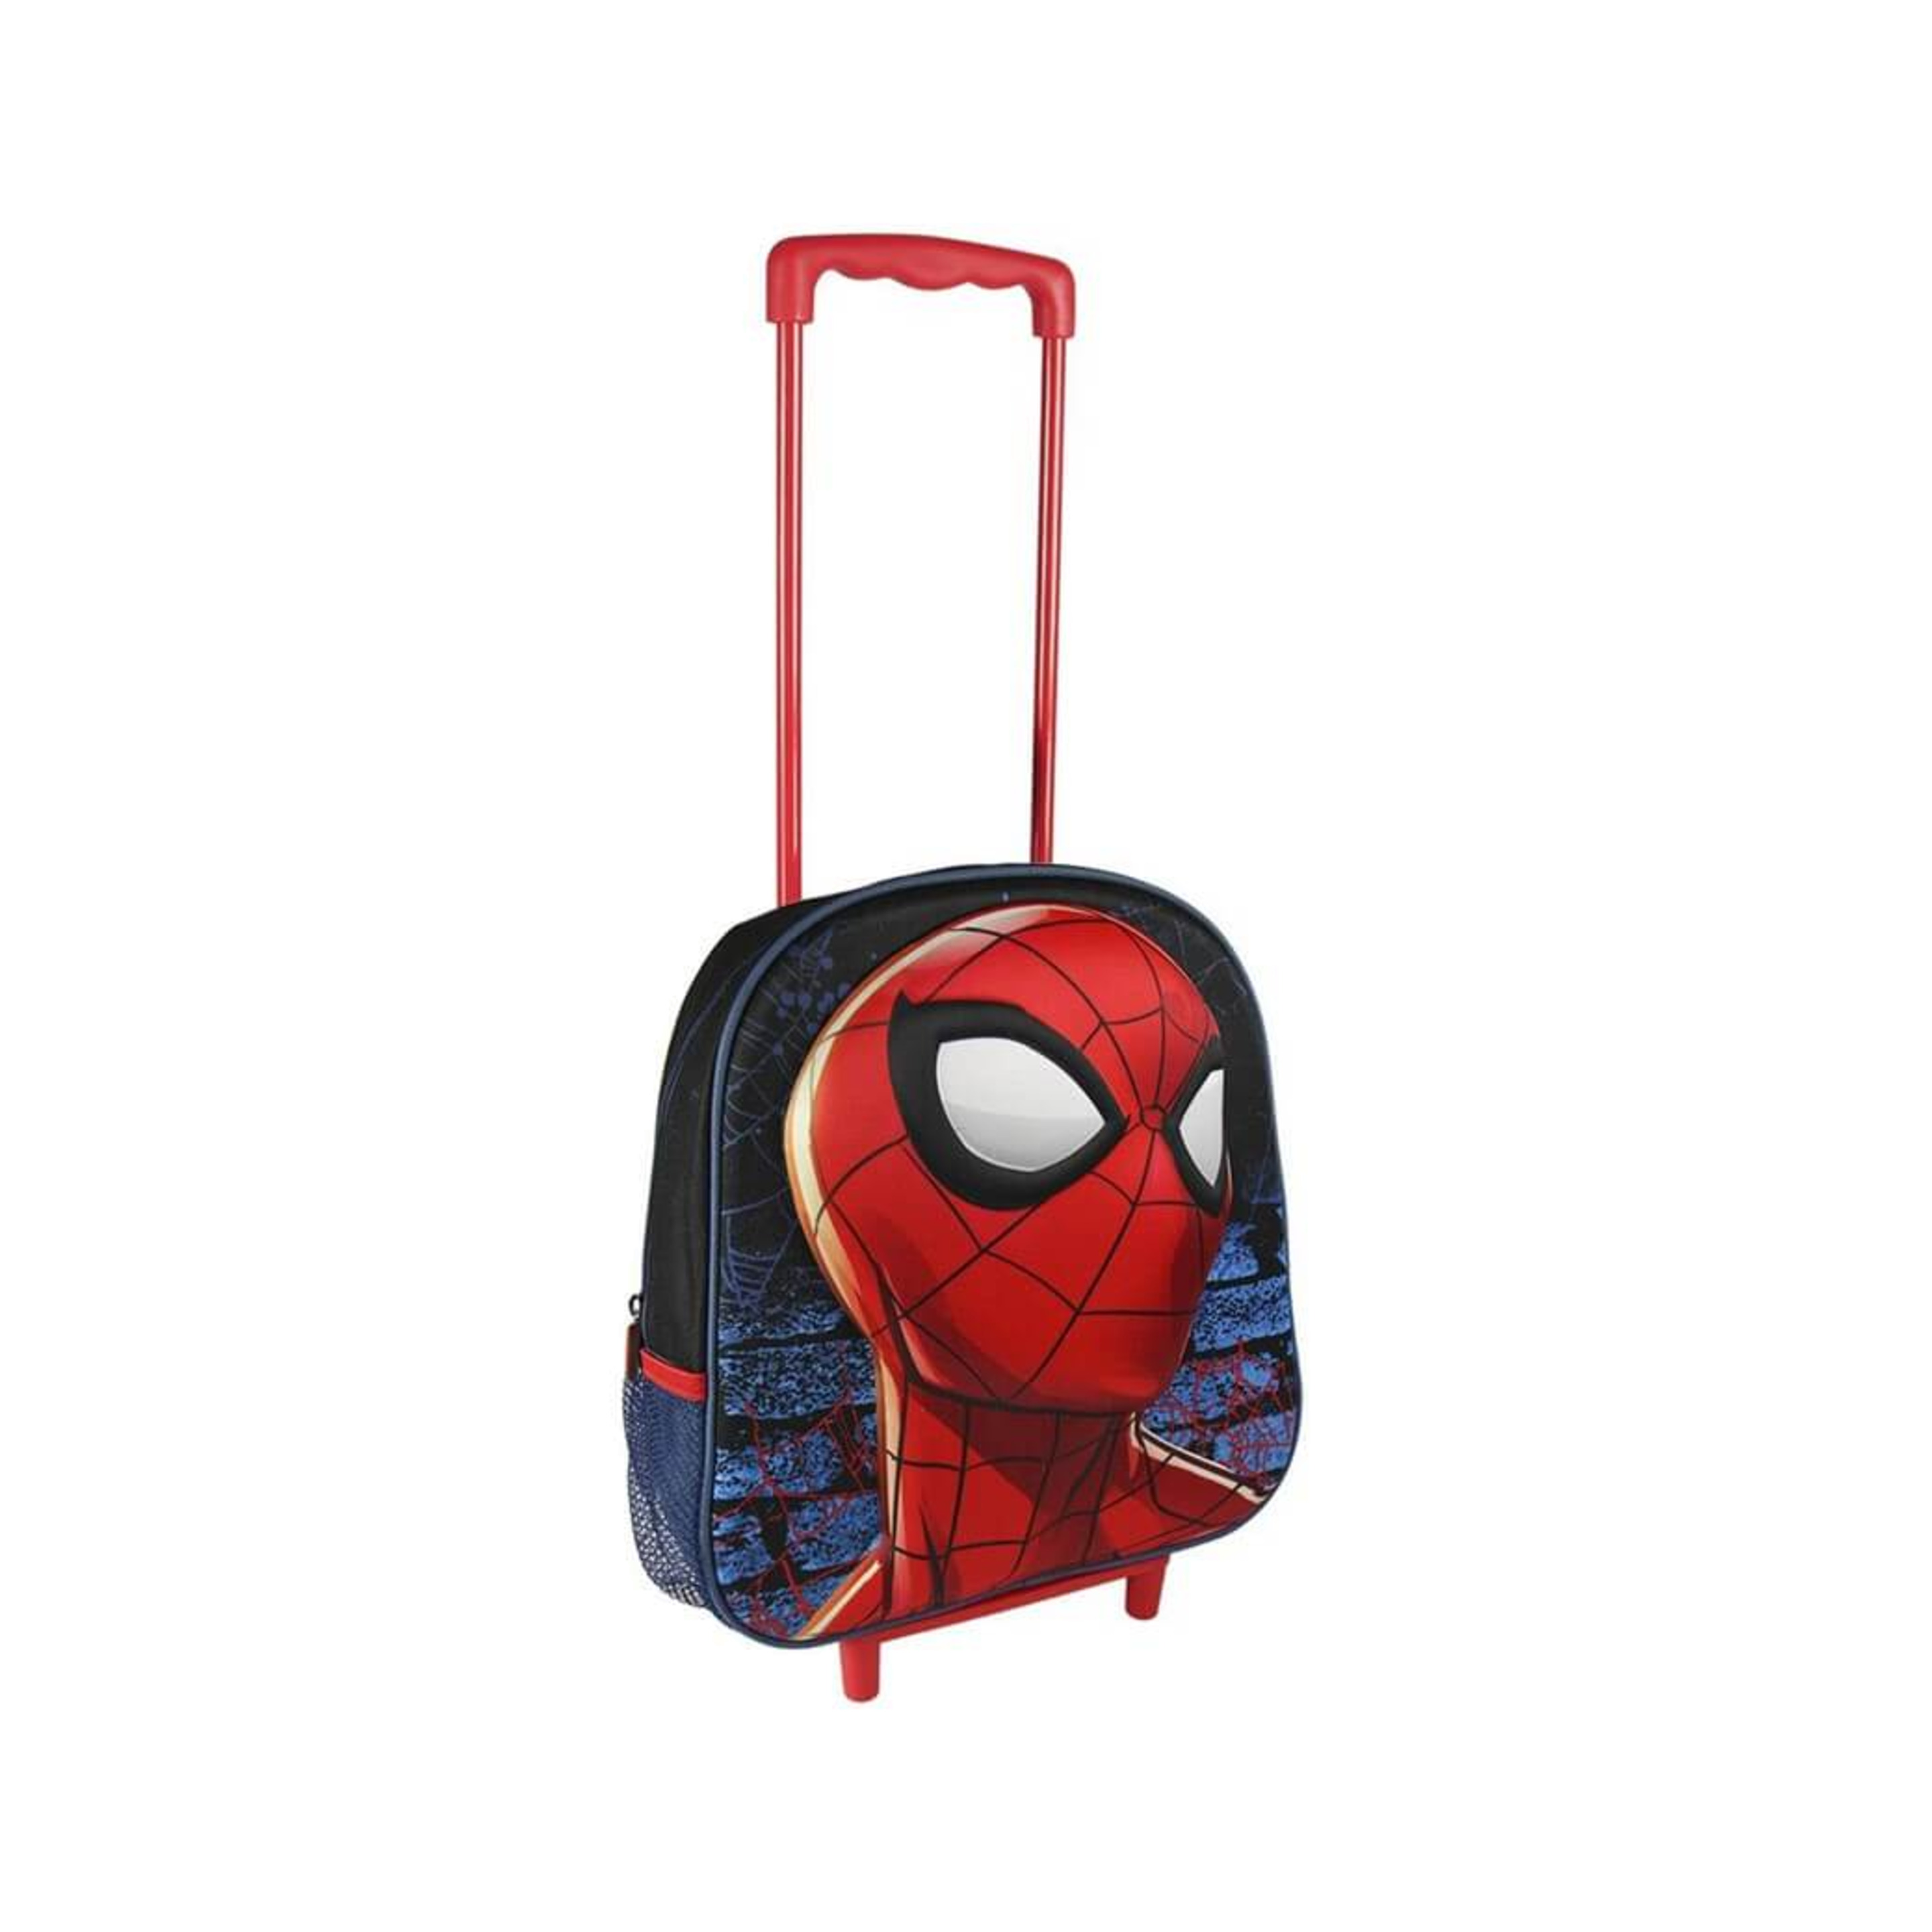 Mochila Con Tirador Y Ruedas De Spiderman 25x31x10 Cm - multicolor - 